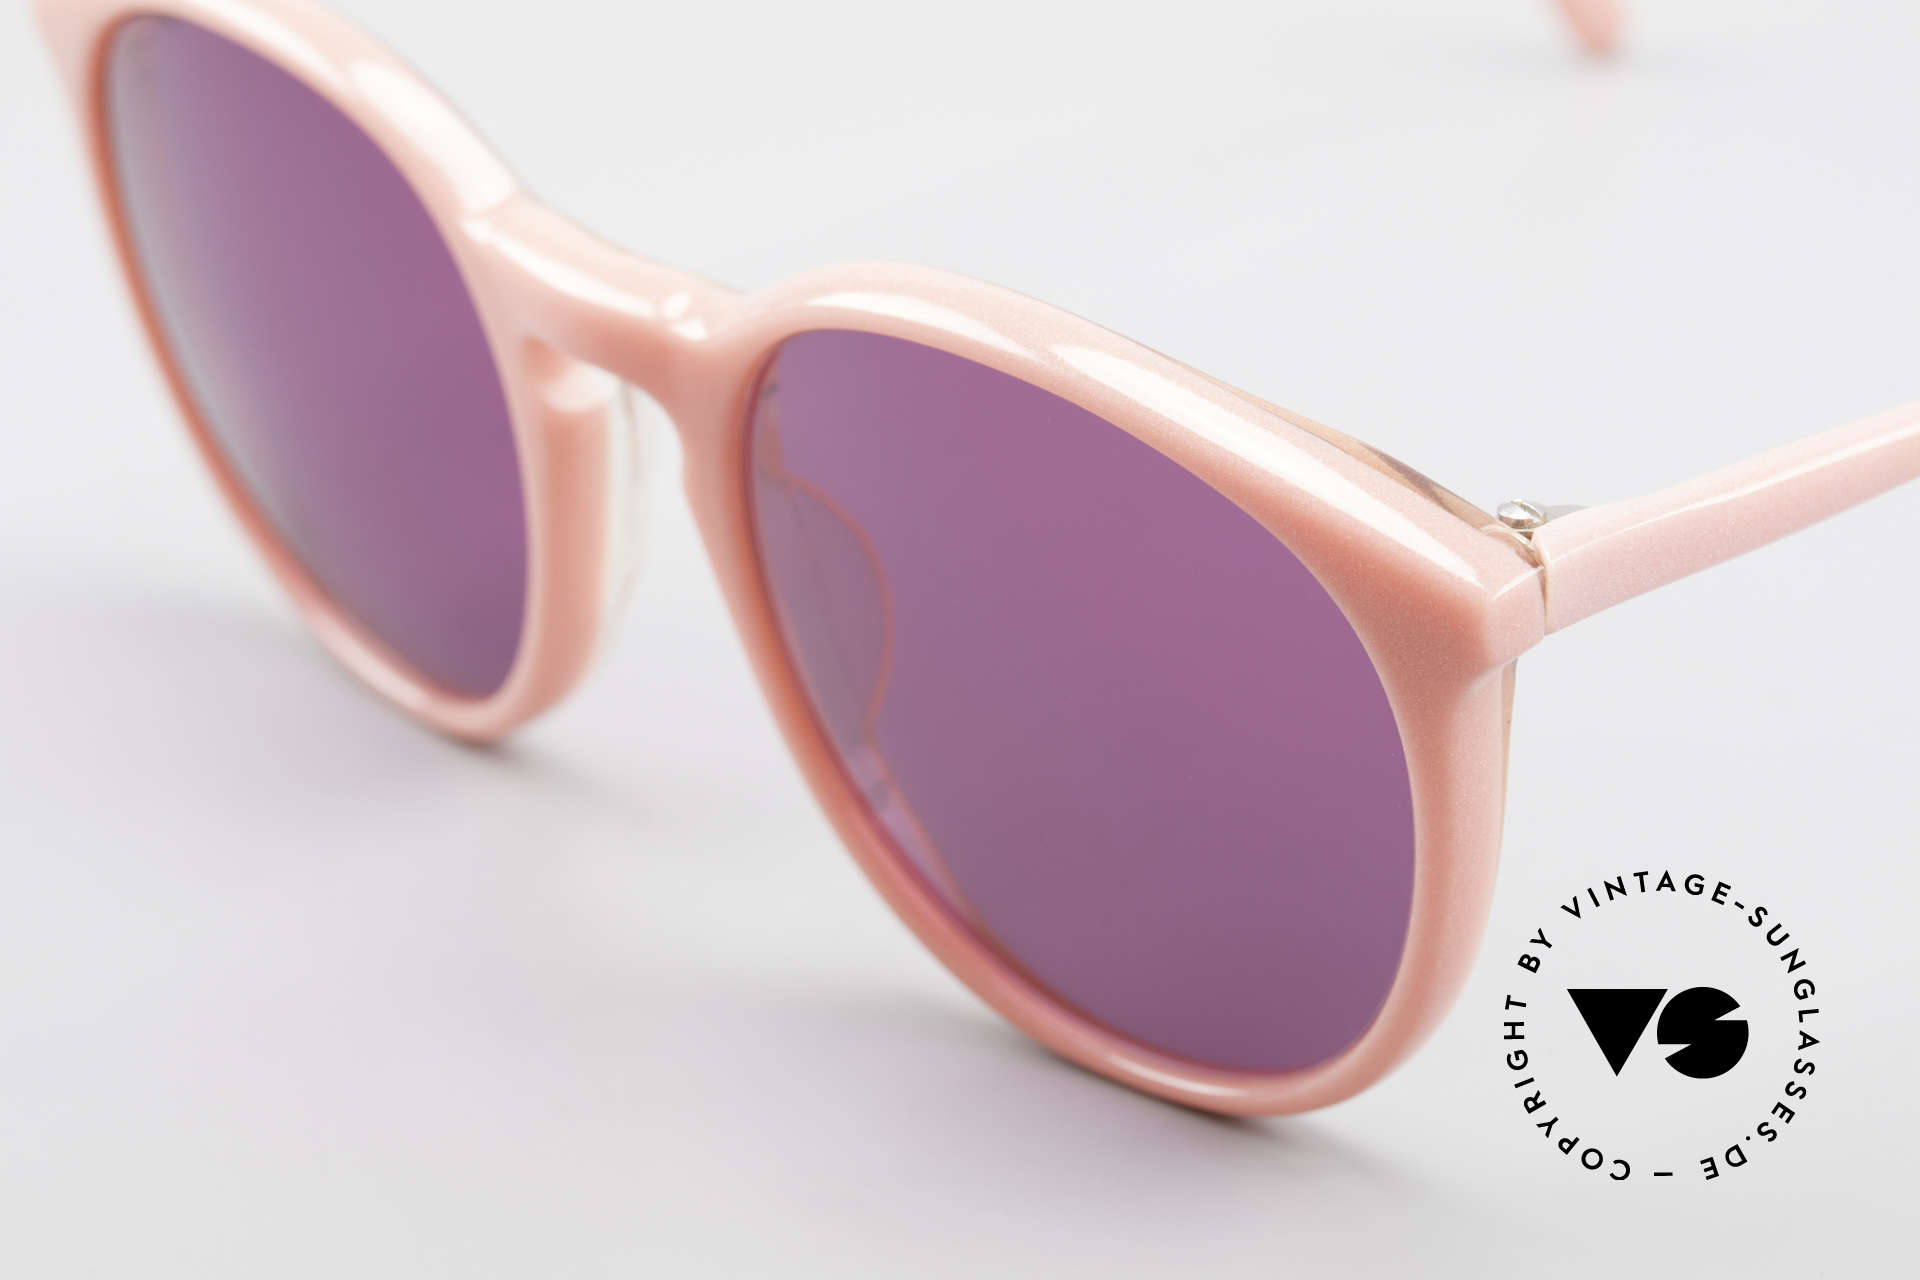 Alain Mikli 901 / 081 Panto Sonnenbrille Lila Pink, lila Sonnengläser (100% UV); SMALL Größe (123mm), Passend für Damen